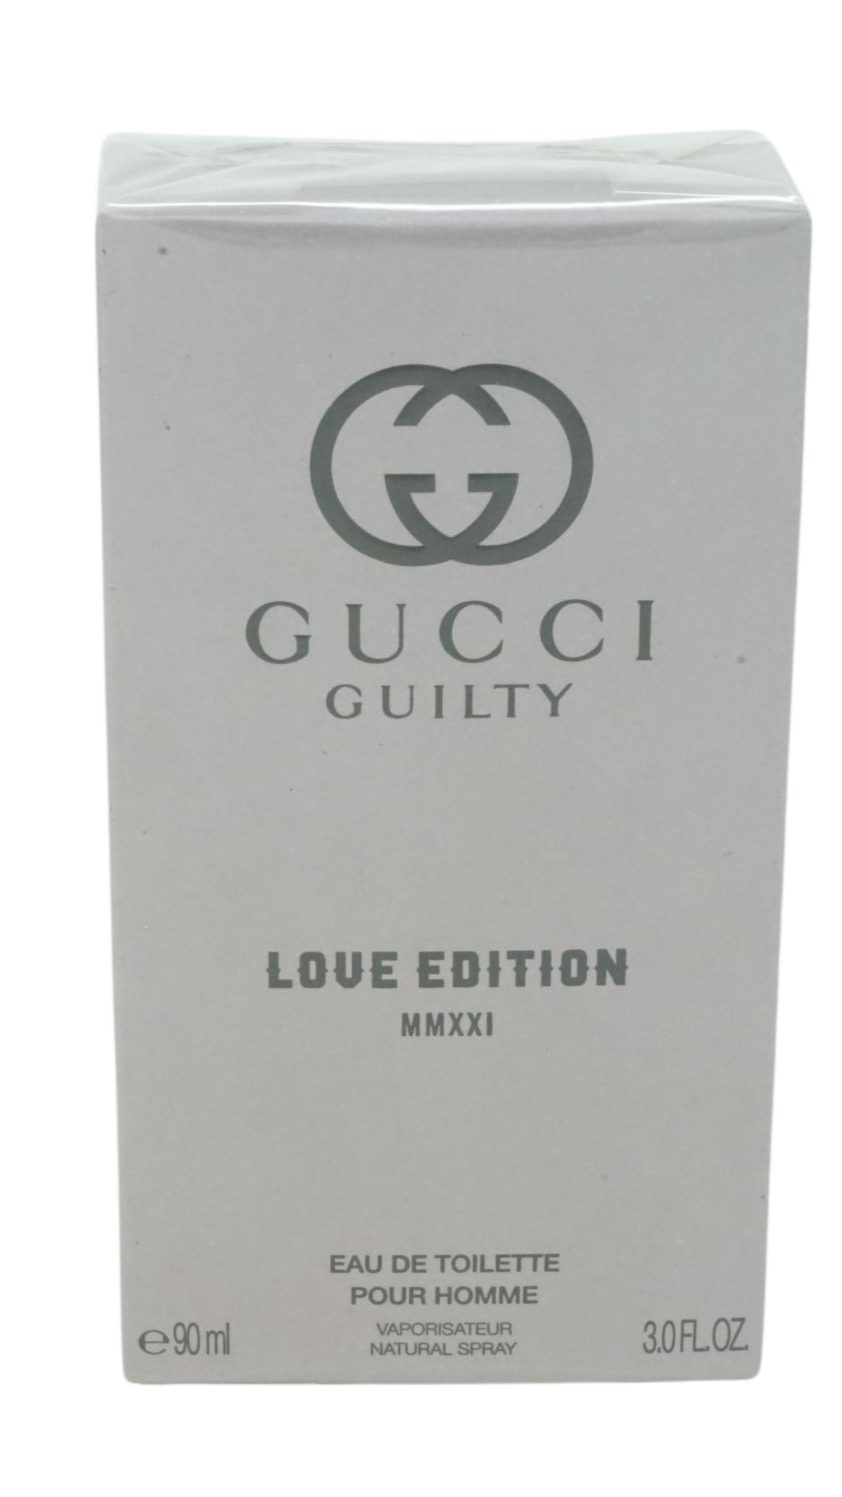 MMXXI Eau Toilette Love Gucci Edition Guilty Toilette de 90ml de GUCCI Eau